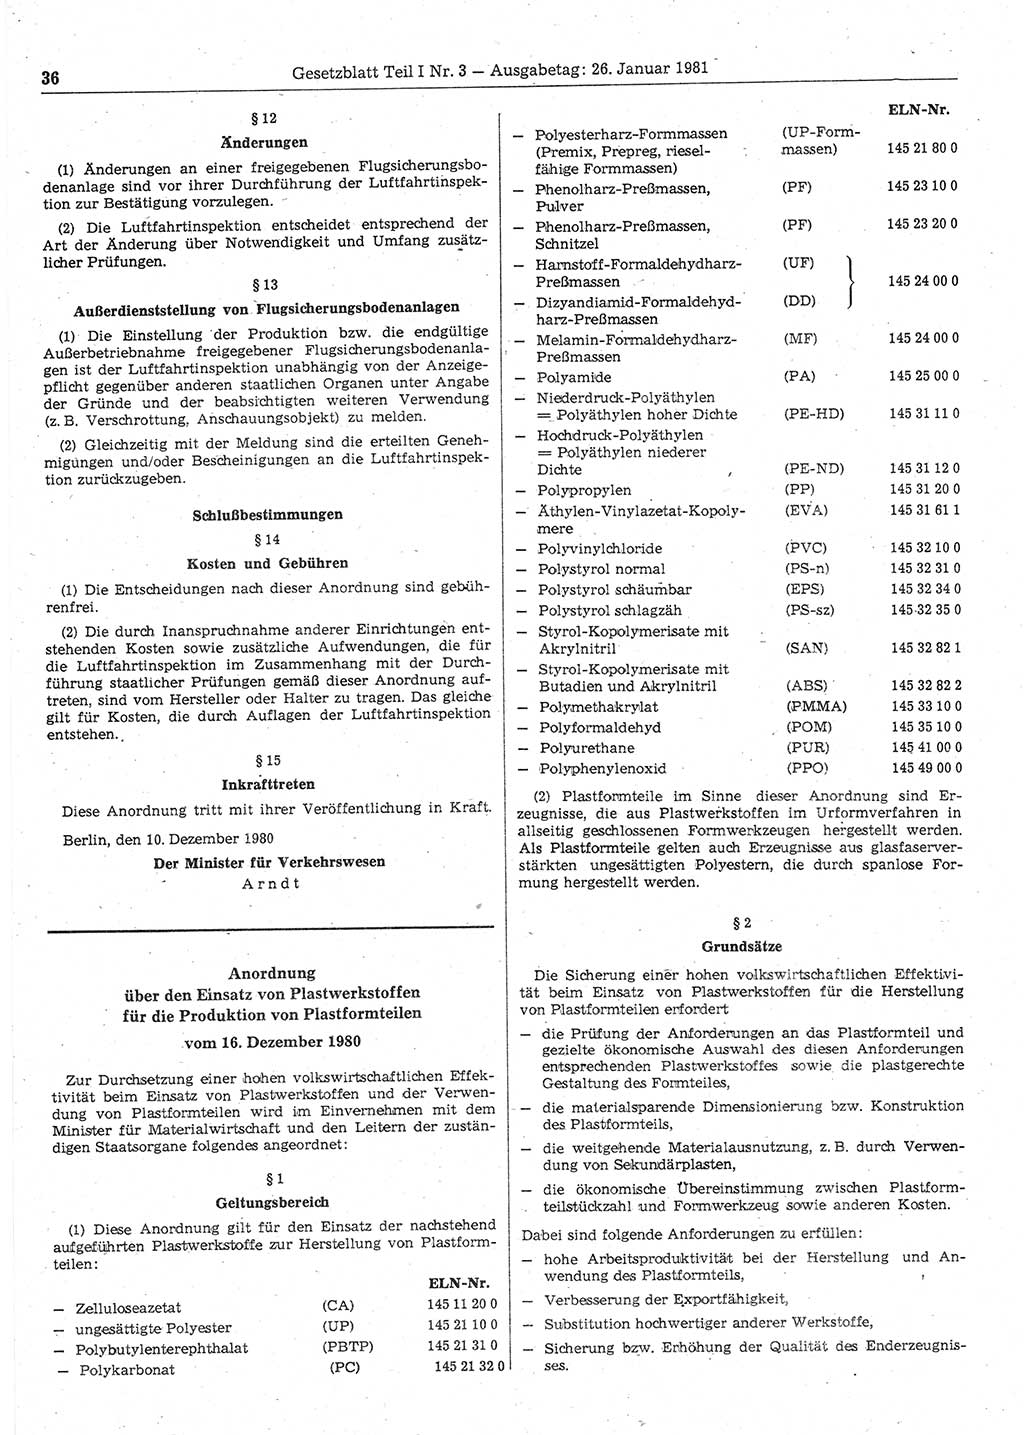 Gesetzblatt (GBl.) der Deutschen Demokratischen Republik (DDR) Teil Ⅰ 1981, Seite 36 (GBl. DDR Ⅰ 1981, S. 36)